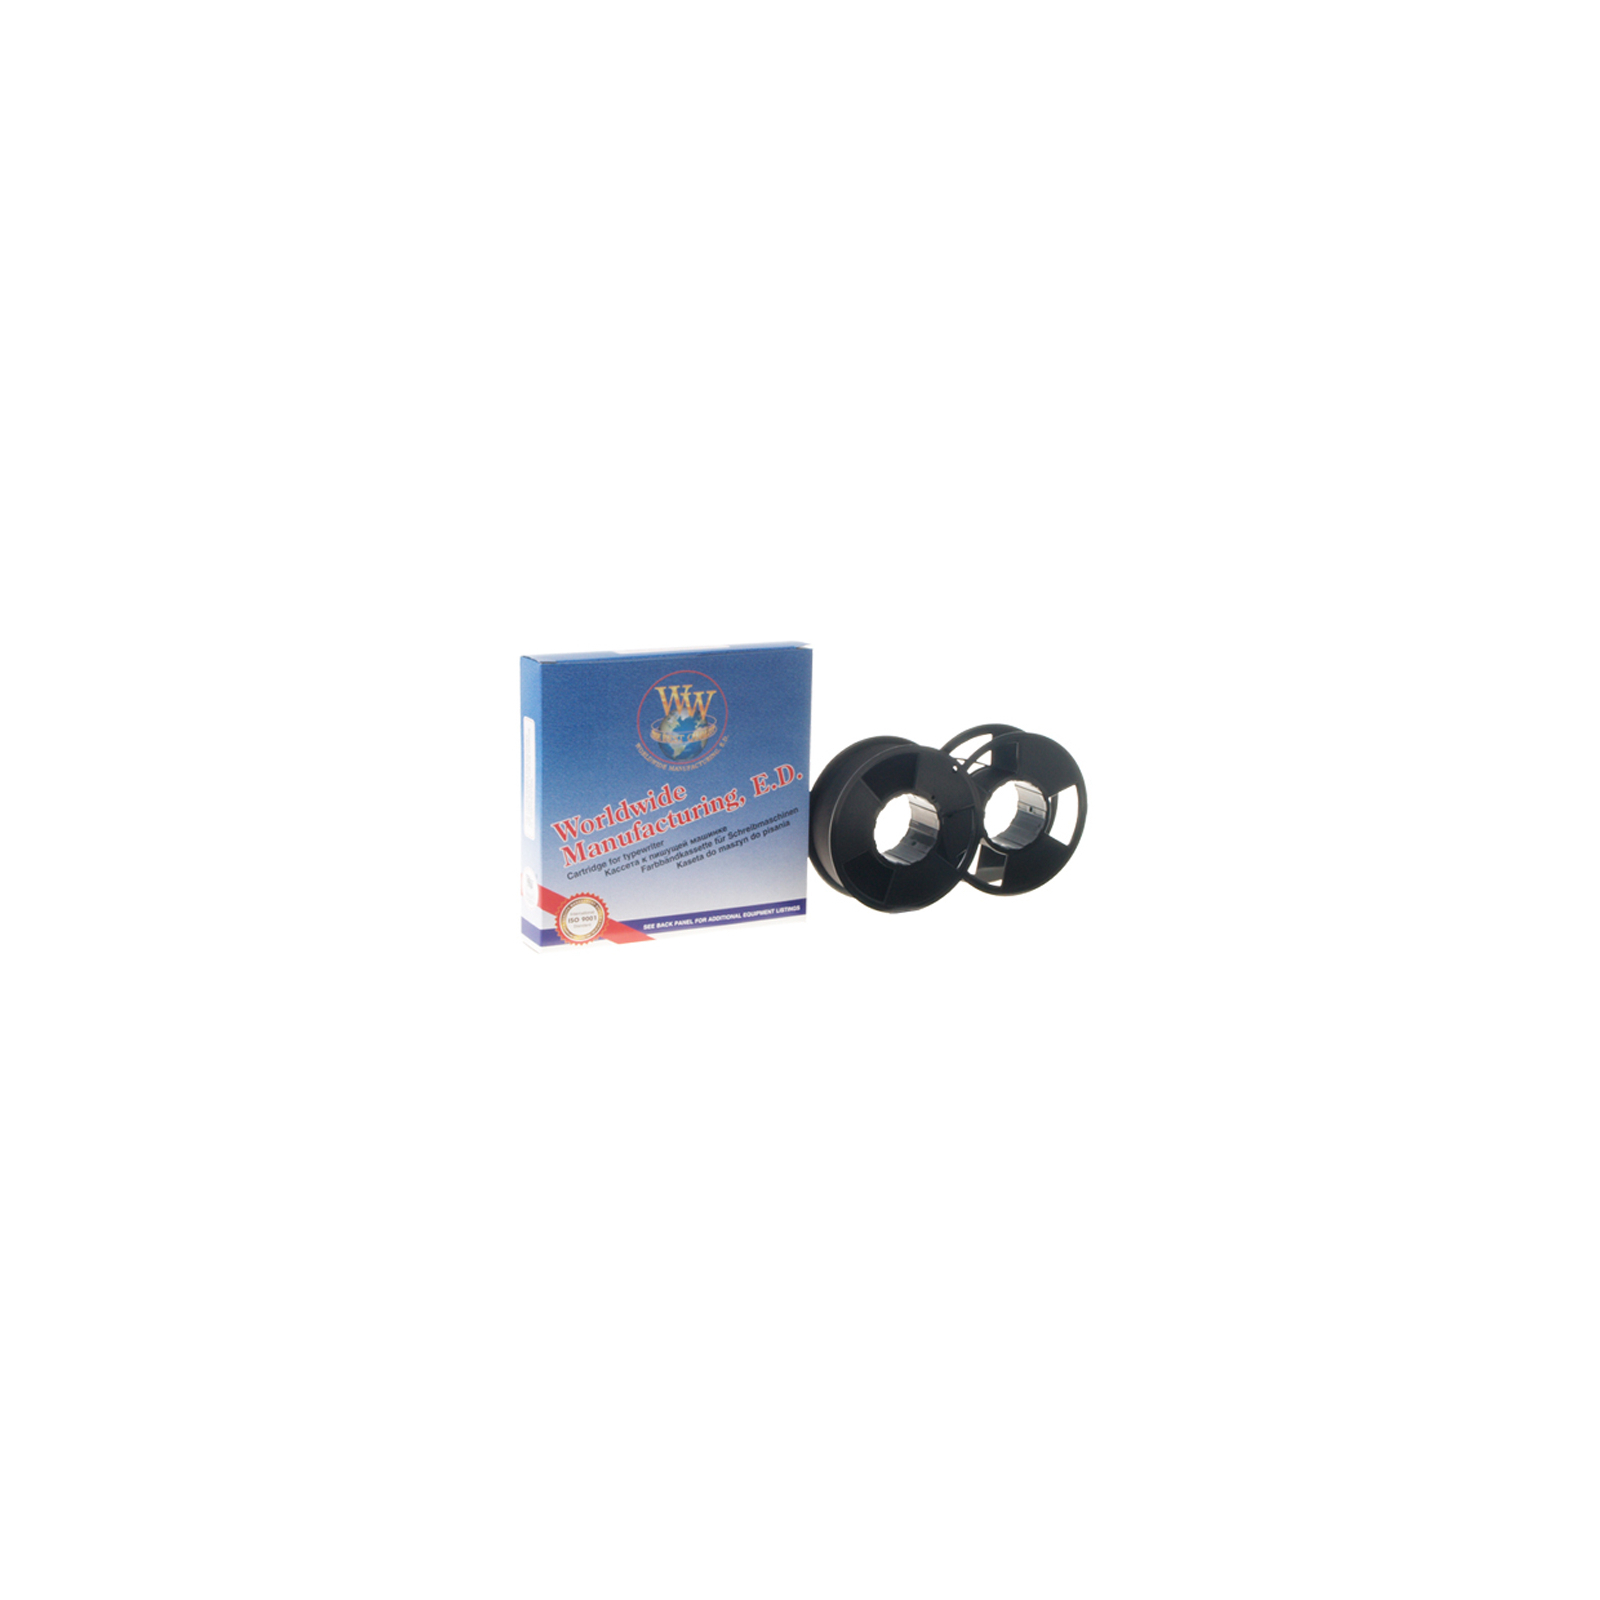 Картридж WWM PRINTRONIX P300/600 Spool 55m STD Black (P.08S)